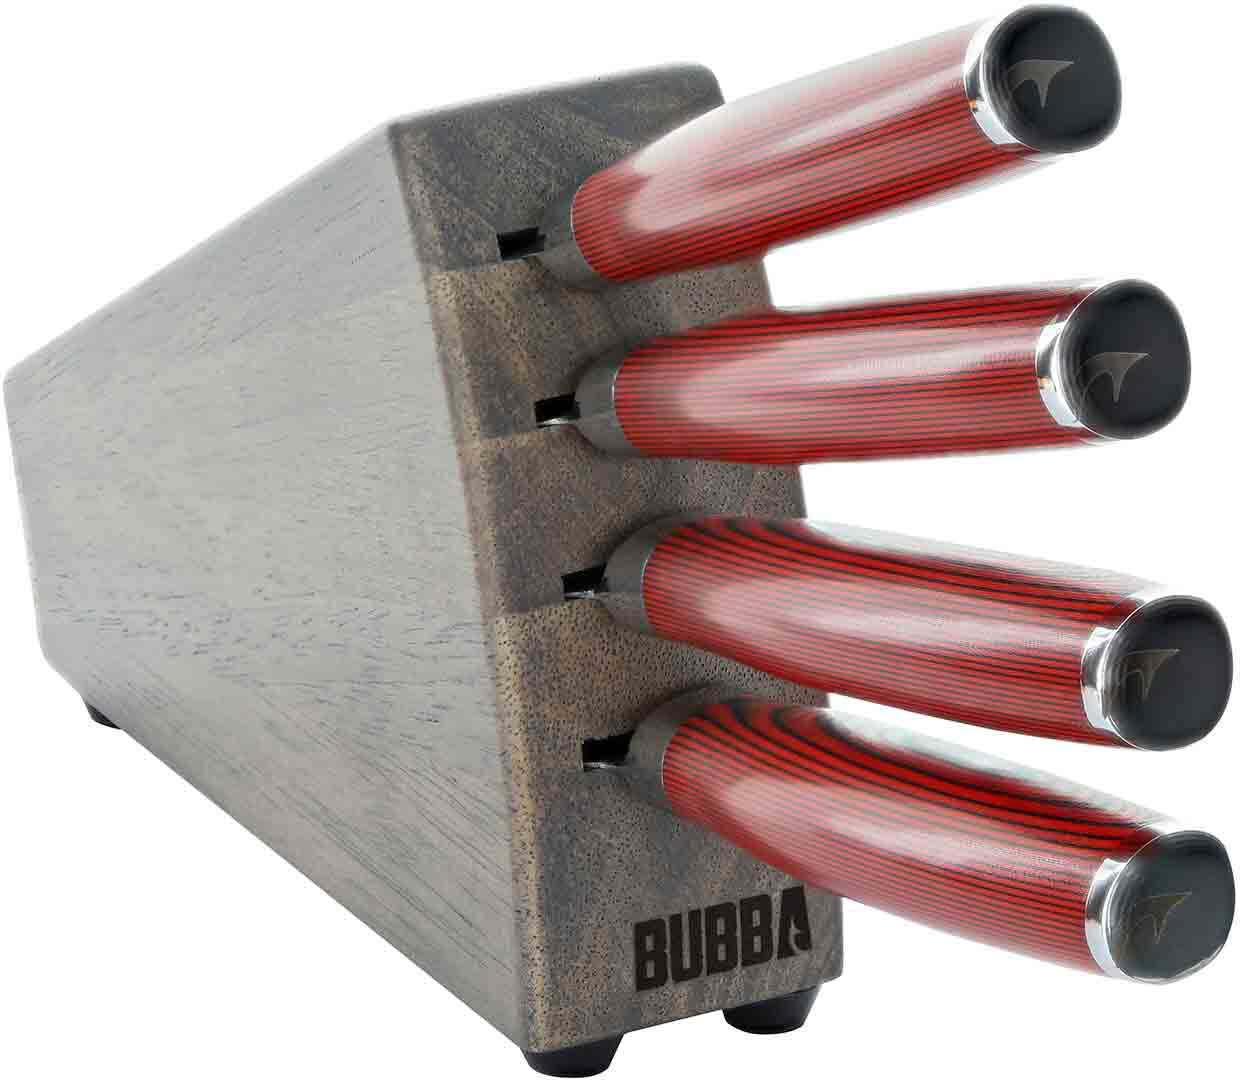 Bubba Blade Steak Kitchen Knife Set